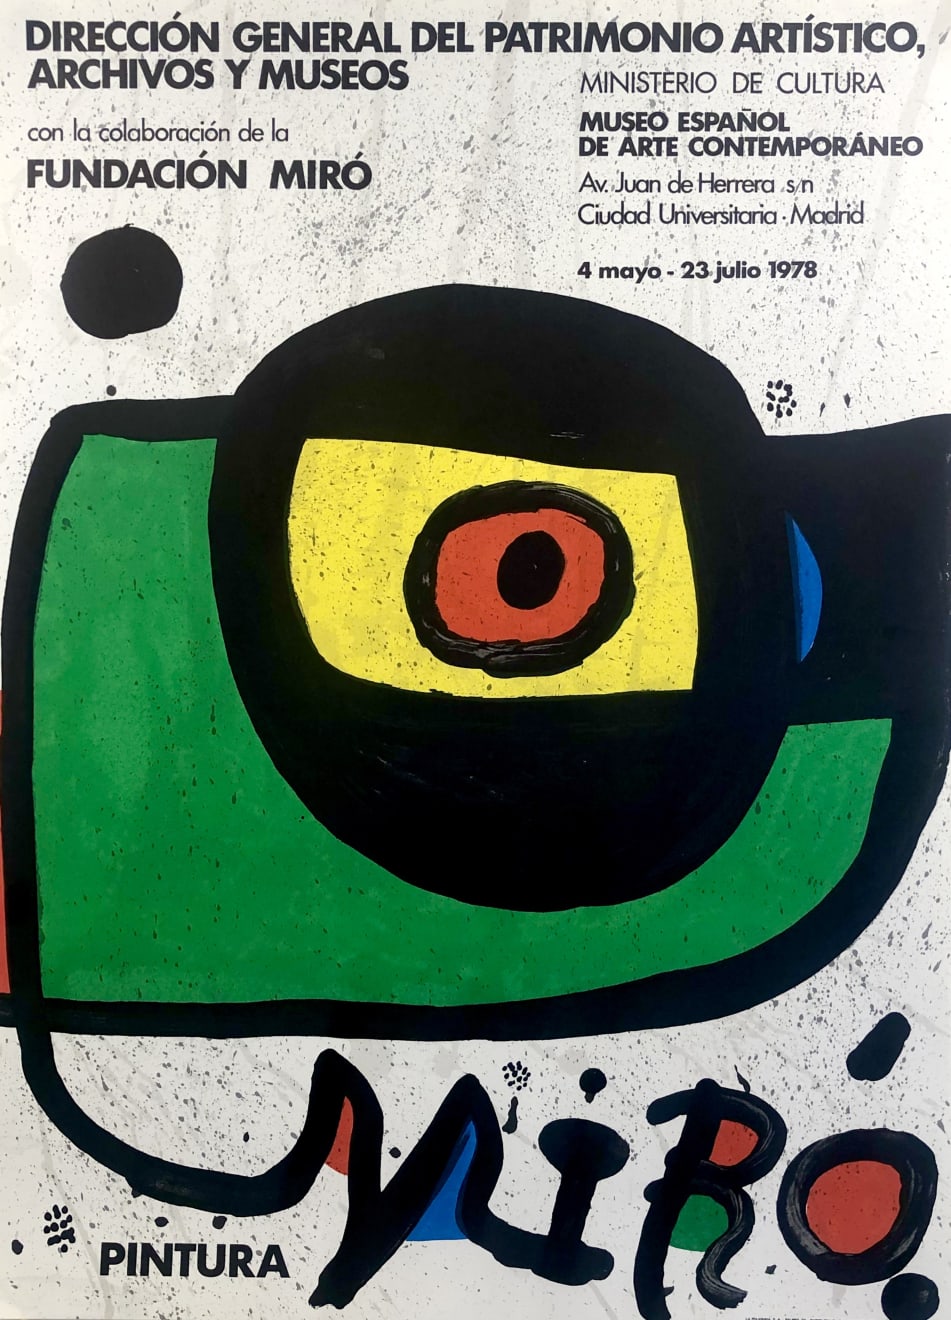 Joan Miró, Museo Español de Arte Contemporaneo, 1978